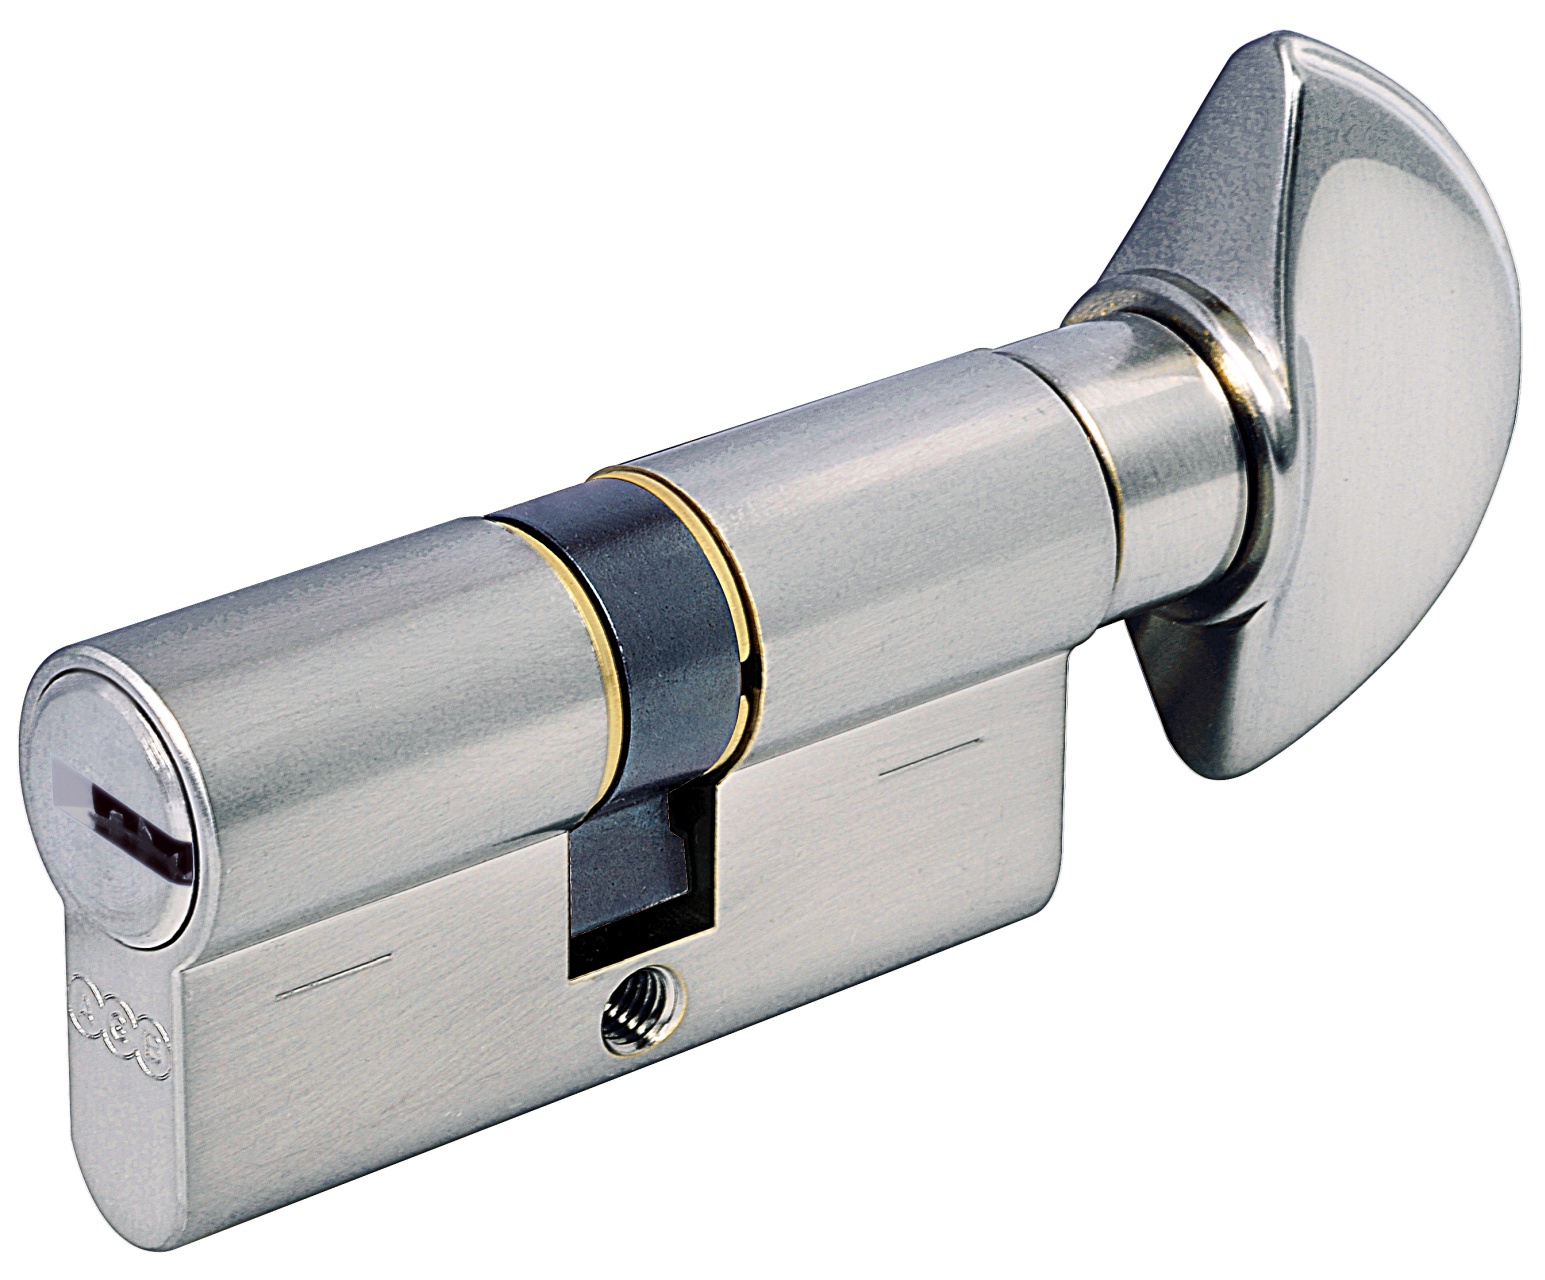 AGB -  Cilindro SCUDO 5000 PS frizionato anti bamping con chiave e pomolo - col. LUCIDO VERNICIATO - lunghezza 75 - misura P-25-10-40